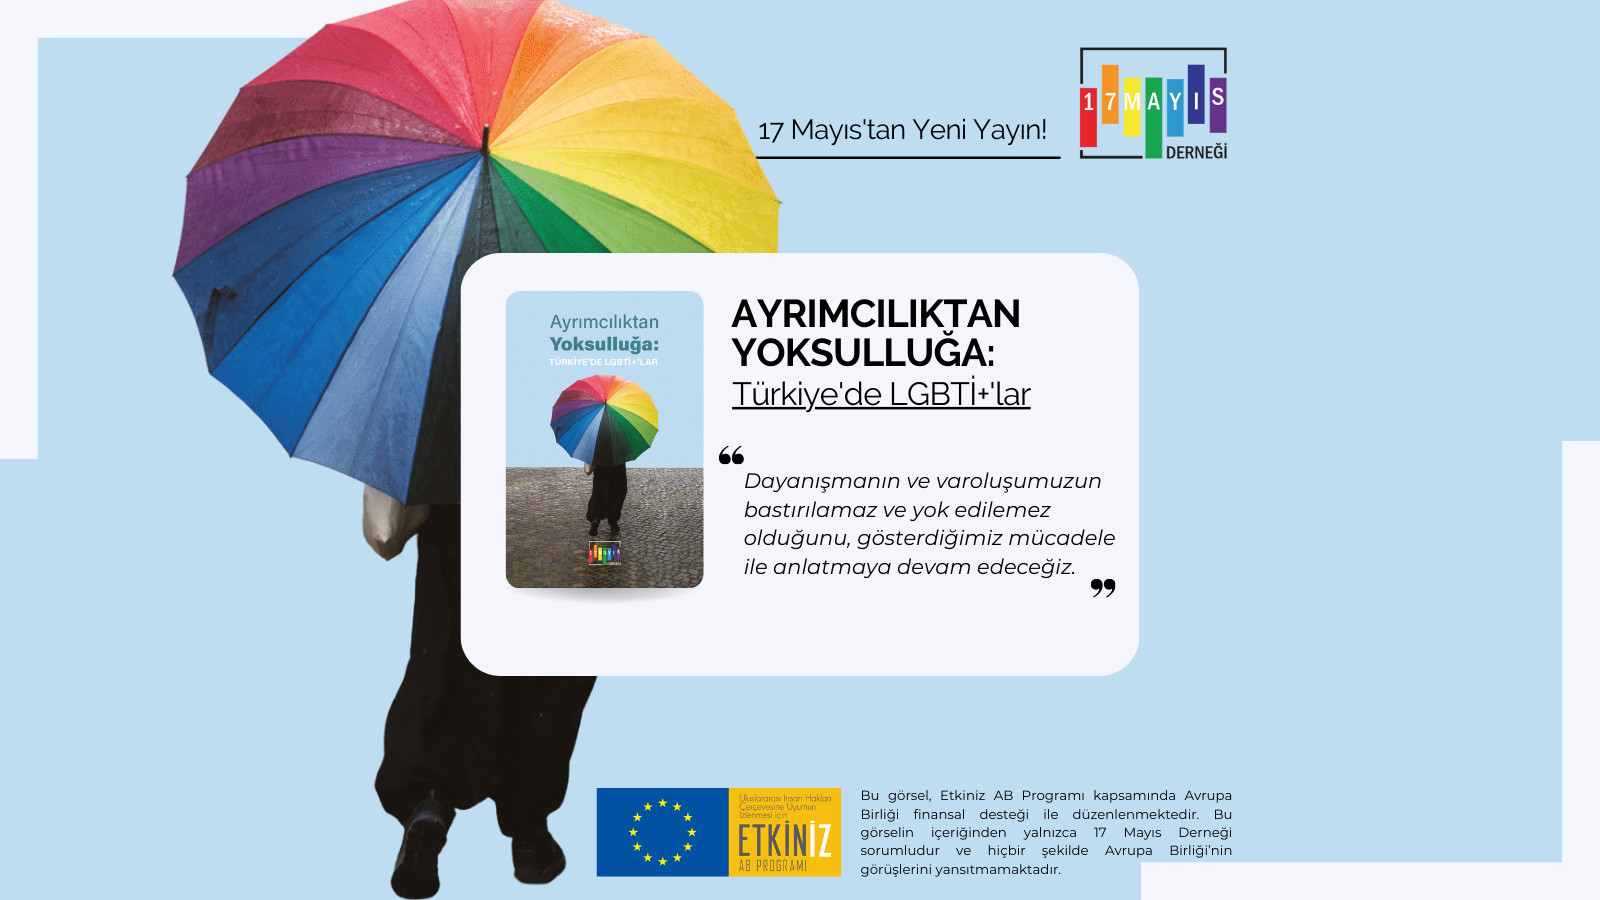 Ayrımcılıktan yoksulluğa Türkiye’de LGBTİ+’lar | Kaos GL - LGBTİ+ Haber Portalı Gökkuşağı Forumu Köşe Yazısı